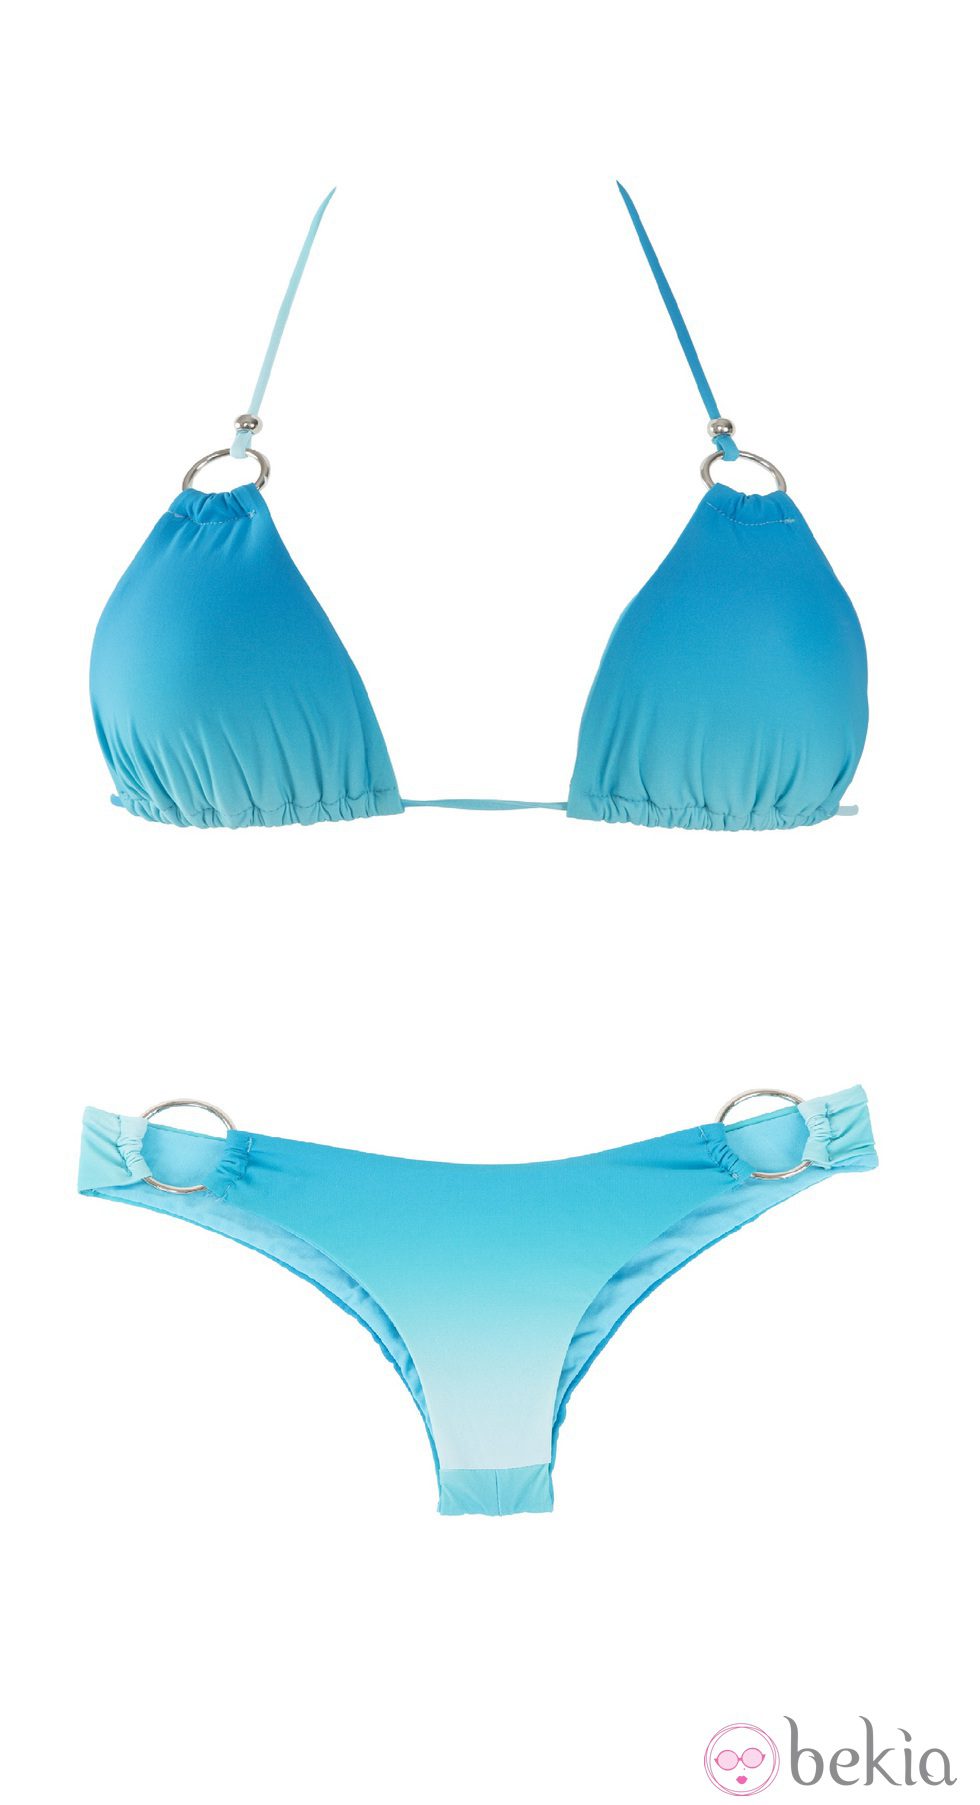 Bikini de triángulo con degradé turquesa de OniricSwimwear para verano 2014